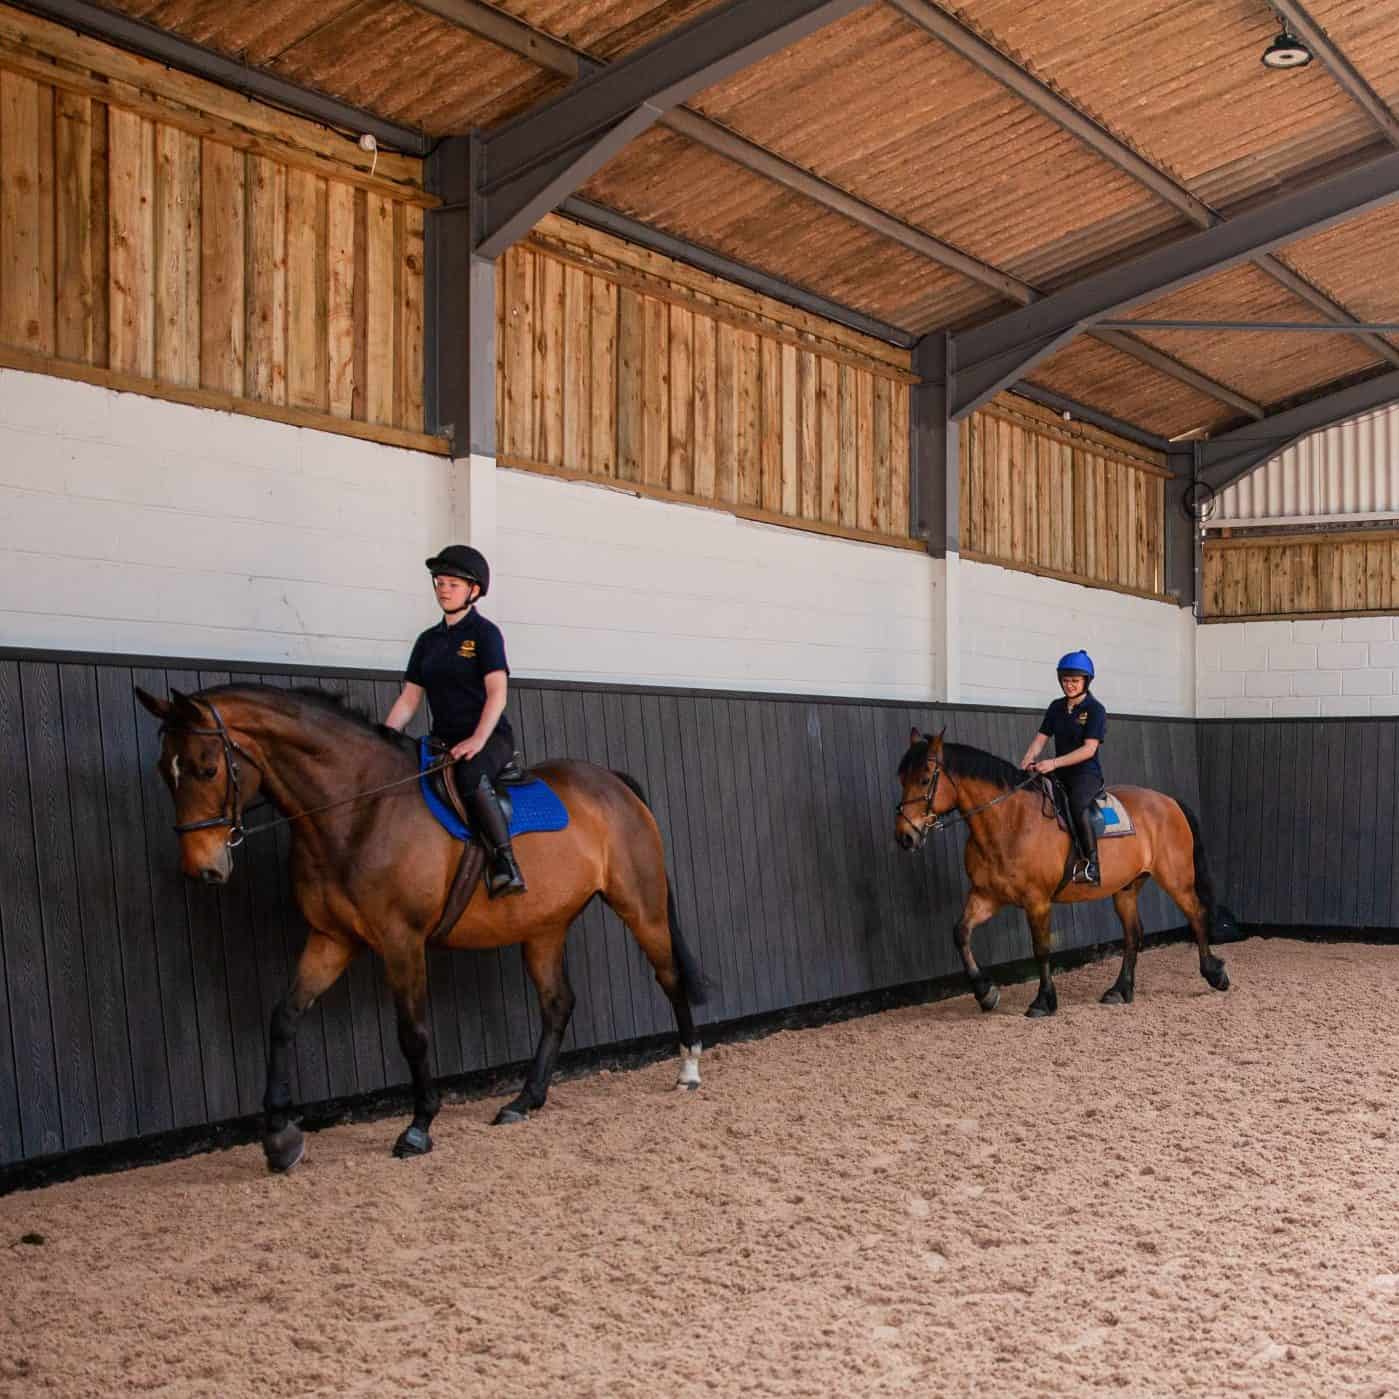 Two horses being ridden in indoor school